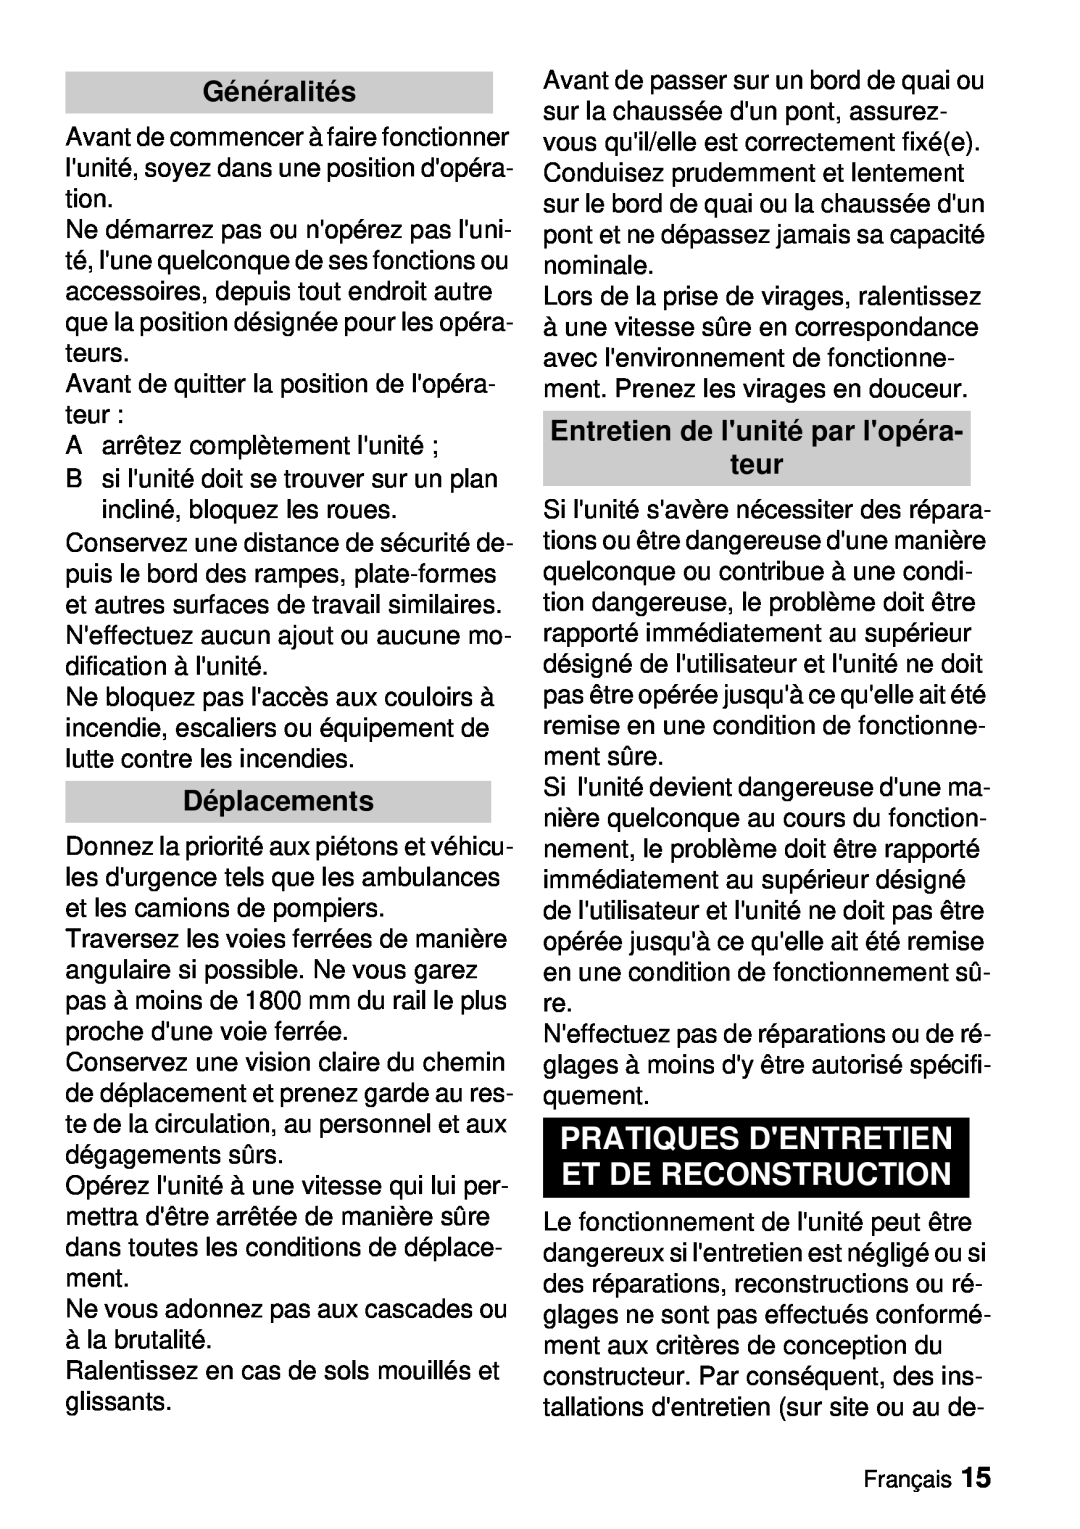 Windsor Saber Blade 12 manual Pratiques Dentretien Et De Reconstruction, Généralités, Déplacements 